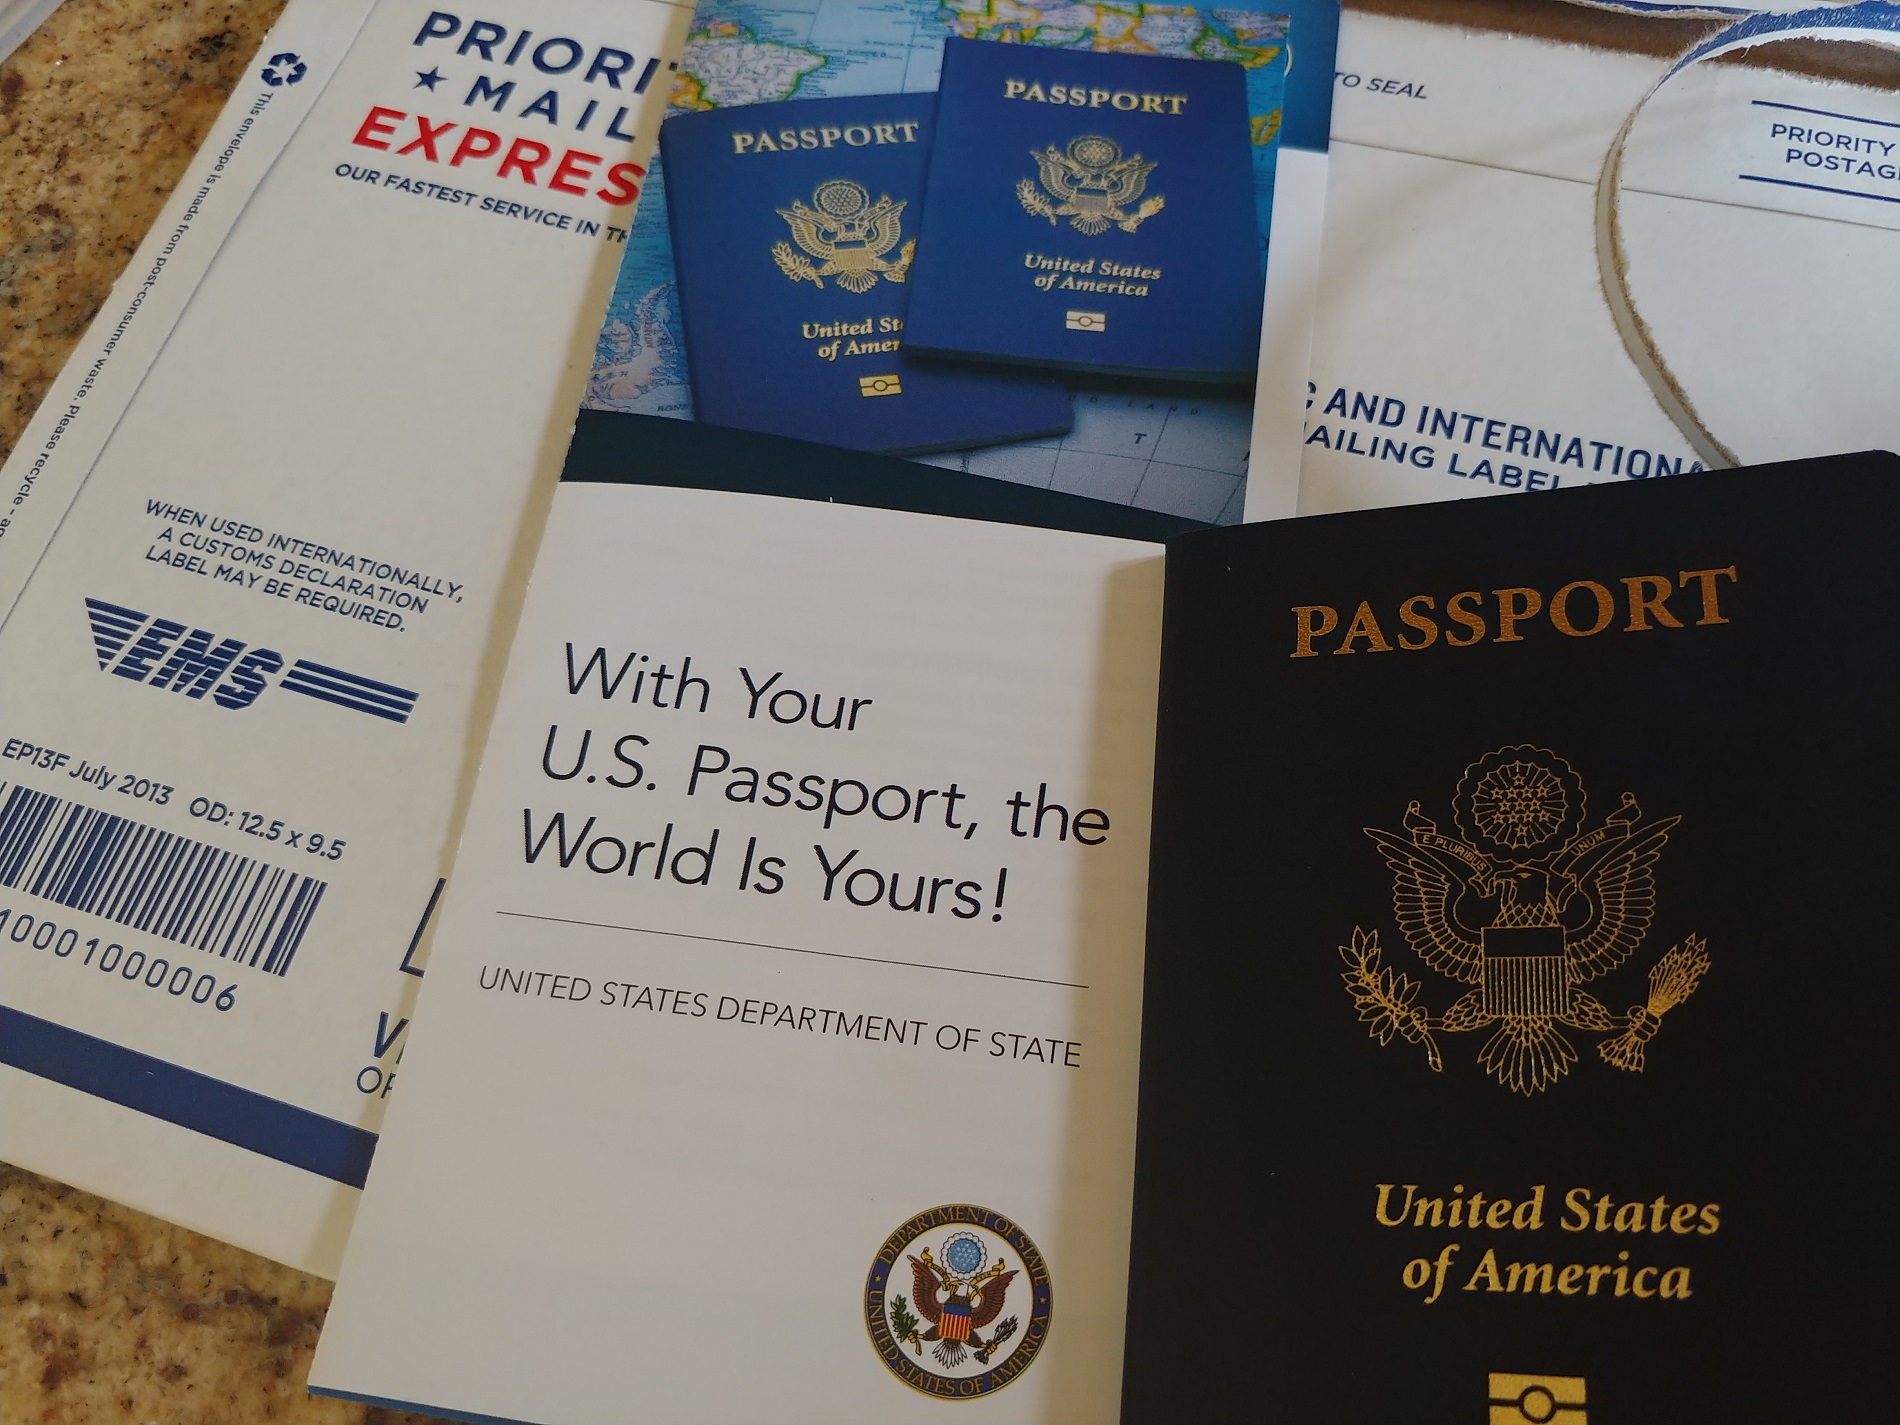 how to expedite my passport